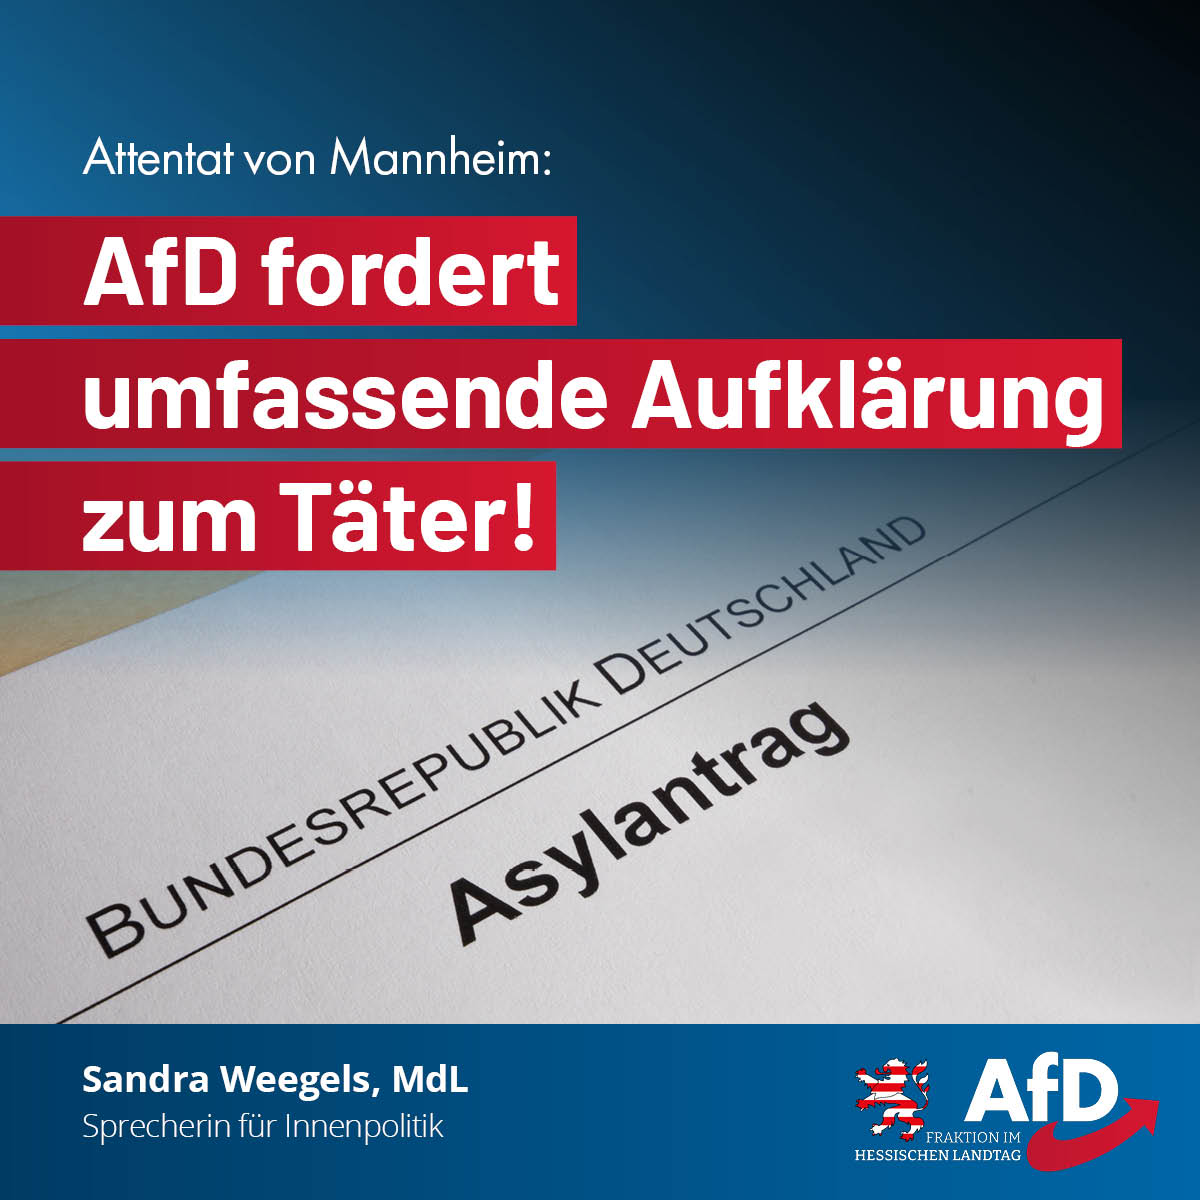 Mehr über den Artikel erfahren Attentat von Mannheim: AfD fordert umfassende Aufklärung zum Täter